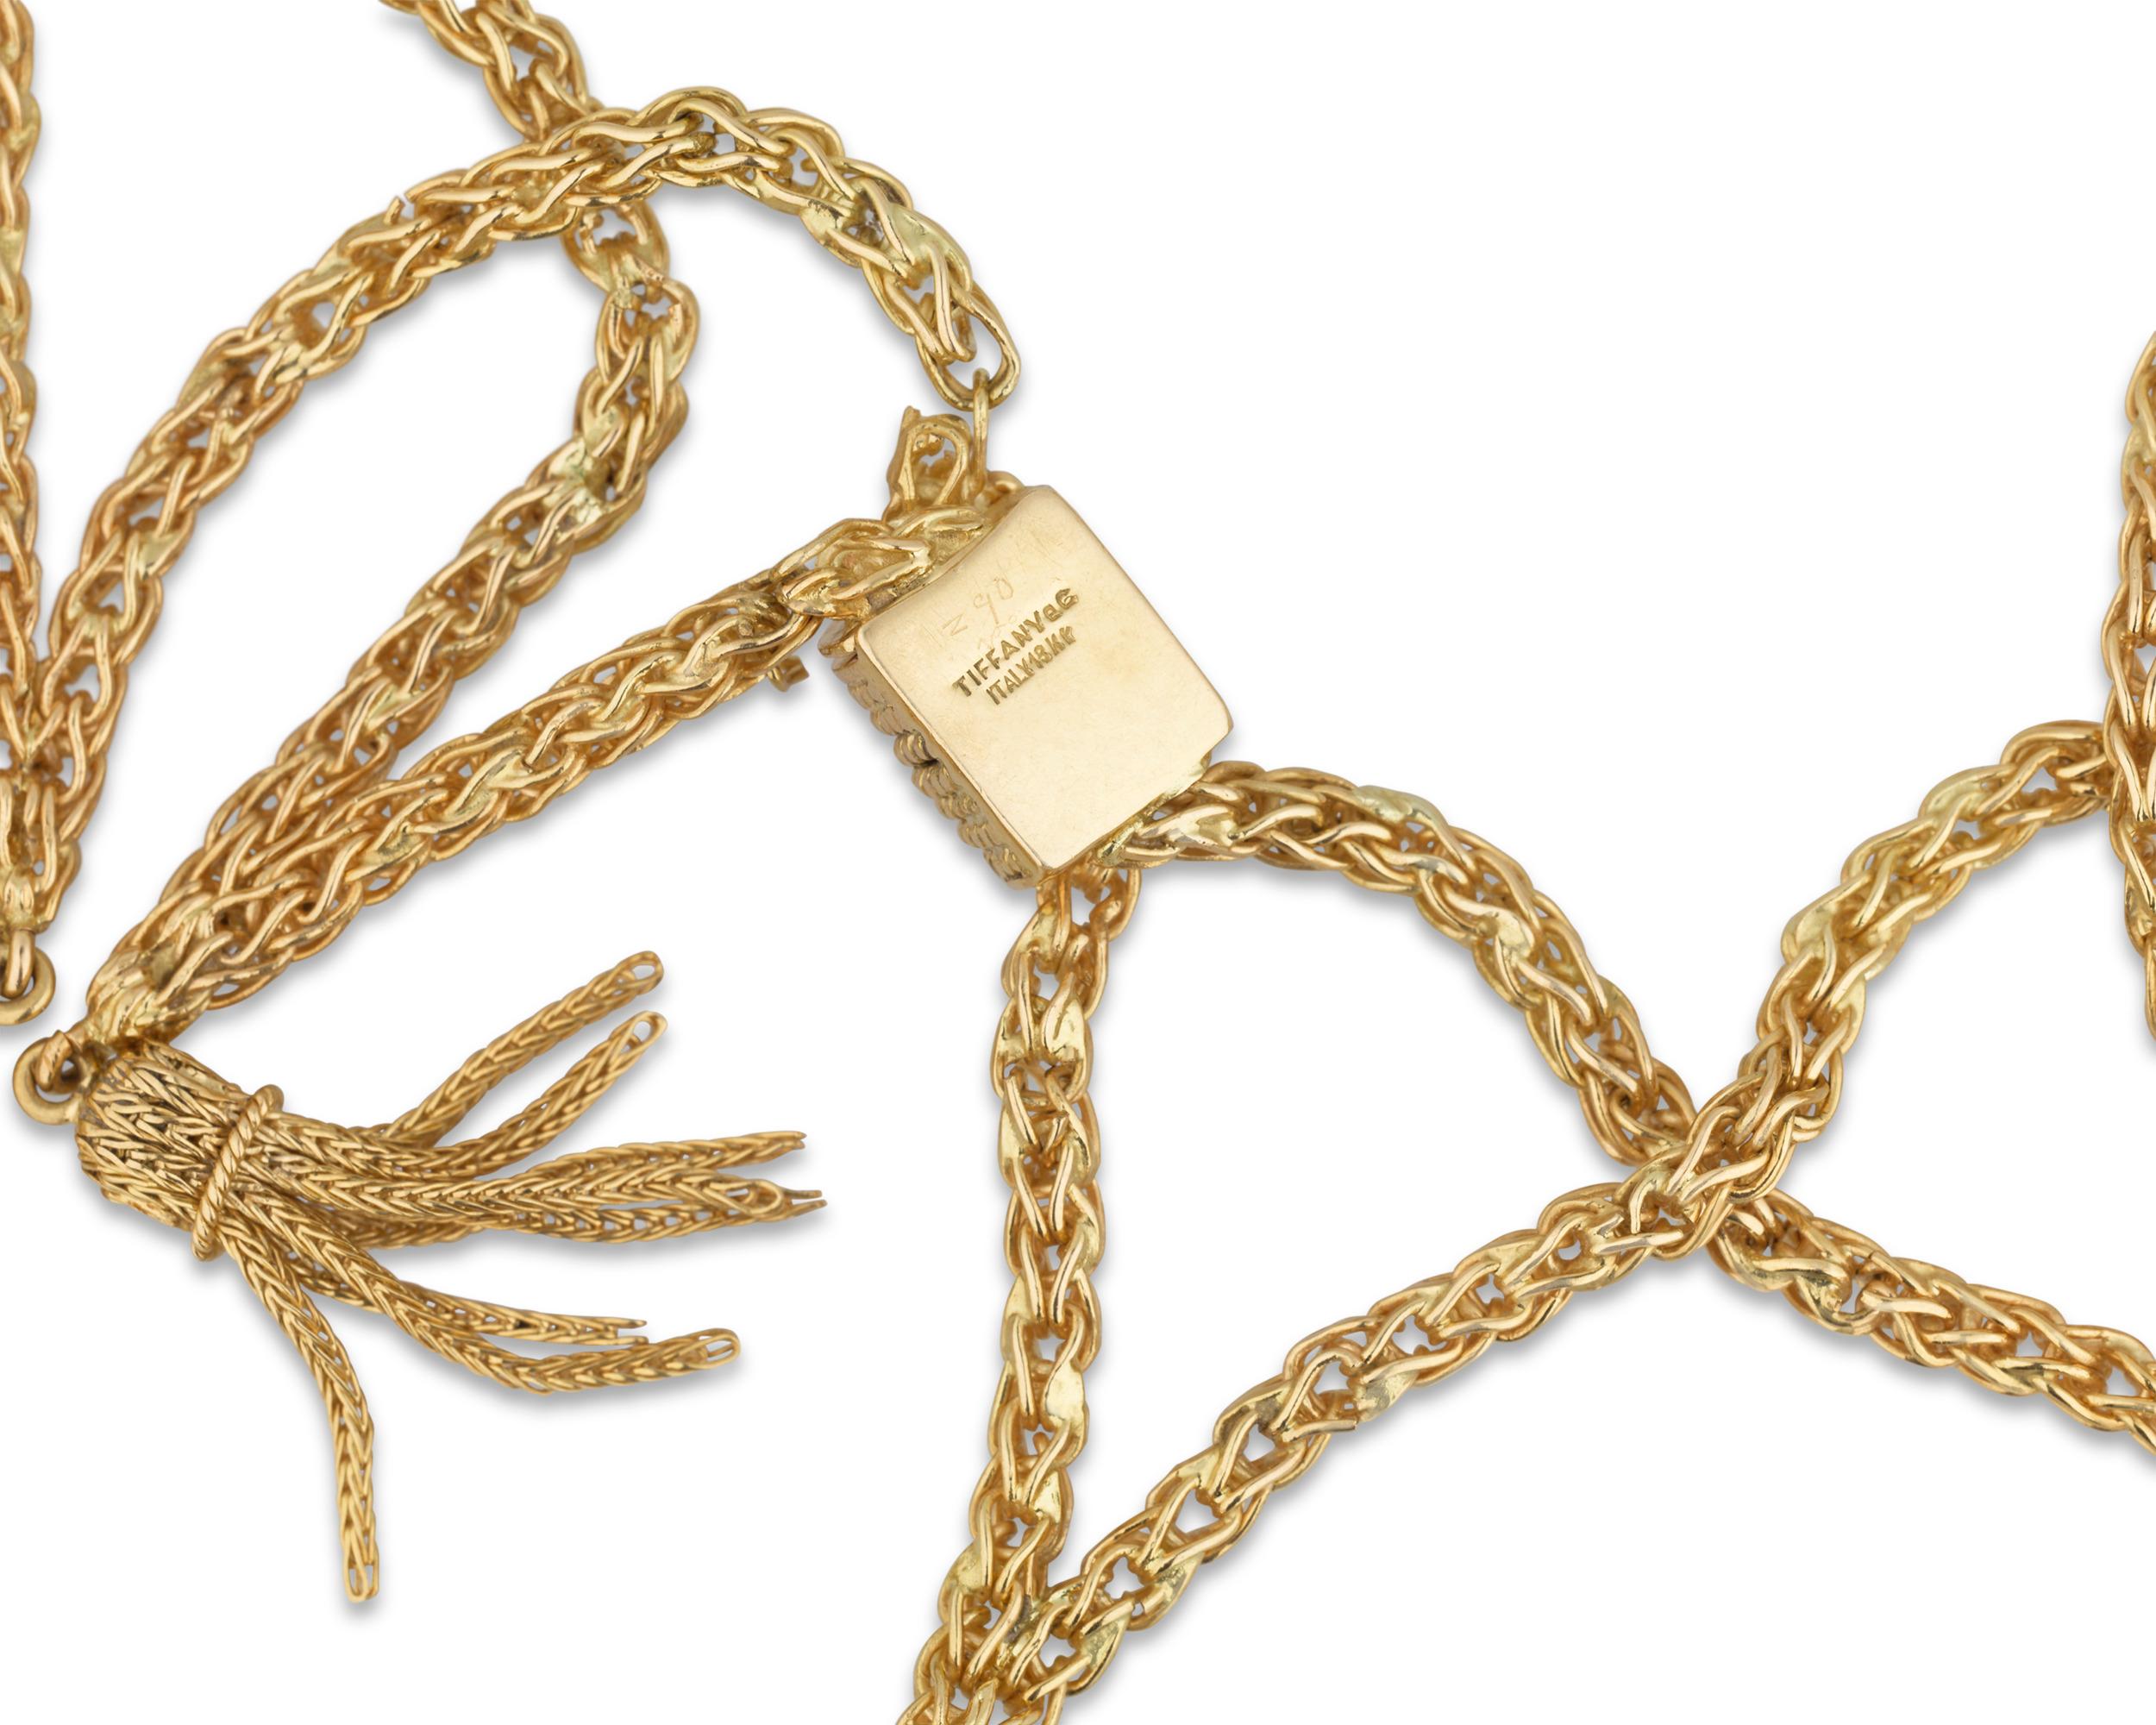 Schicke Quasten aus 18 Karat Gelbgold hängen an einer Goldkette und sorgen für einen dynamischen, zeitgenössischen Look der berühmten Marke Tiffany & Co. Dieses Collier wirkt dank seiner überlappenden Struktur wie eine Spitze, die eine organische